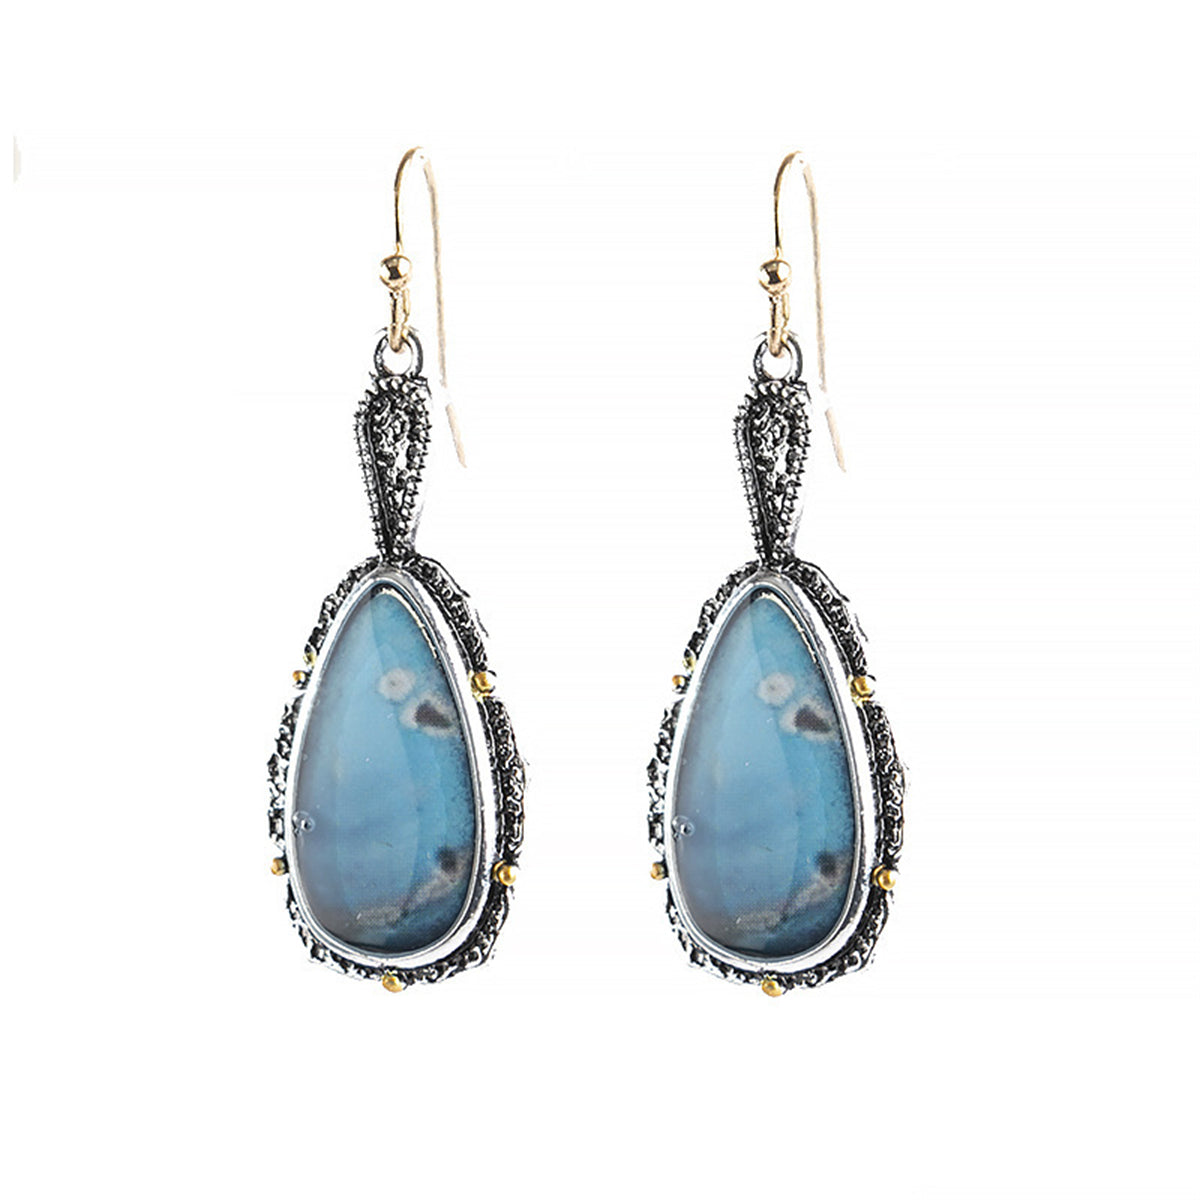 Blue Turquoise & Two-Tone Teardrop Earrings